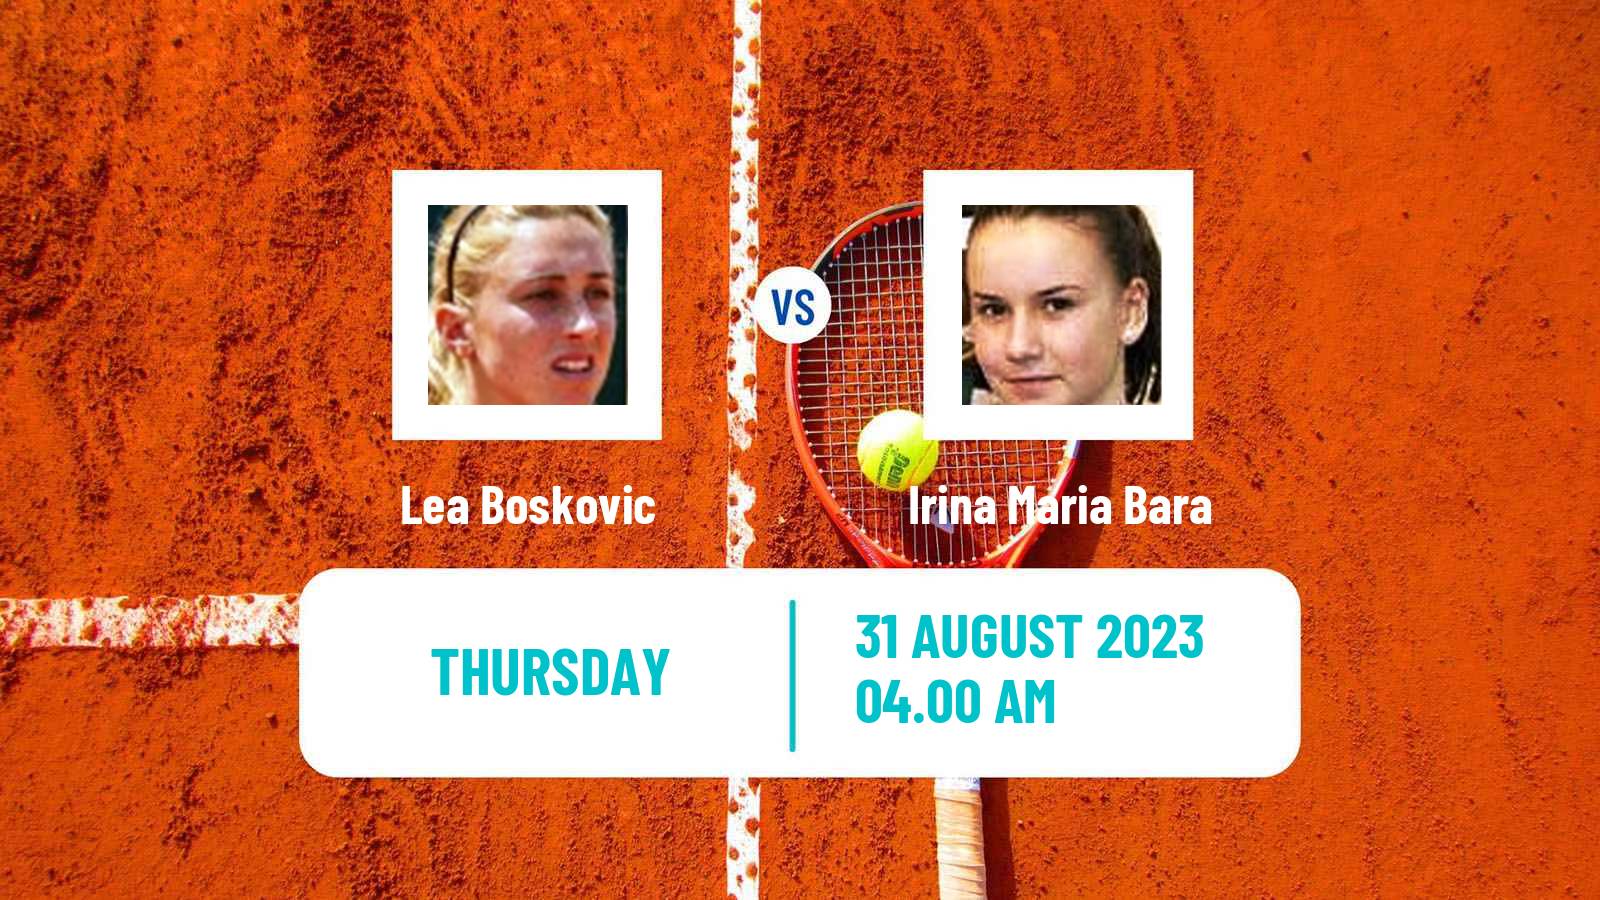 Tennis ITF W60 Prague 2 Women Lea Boskovic - Irina Maria Bara